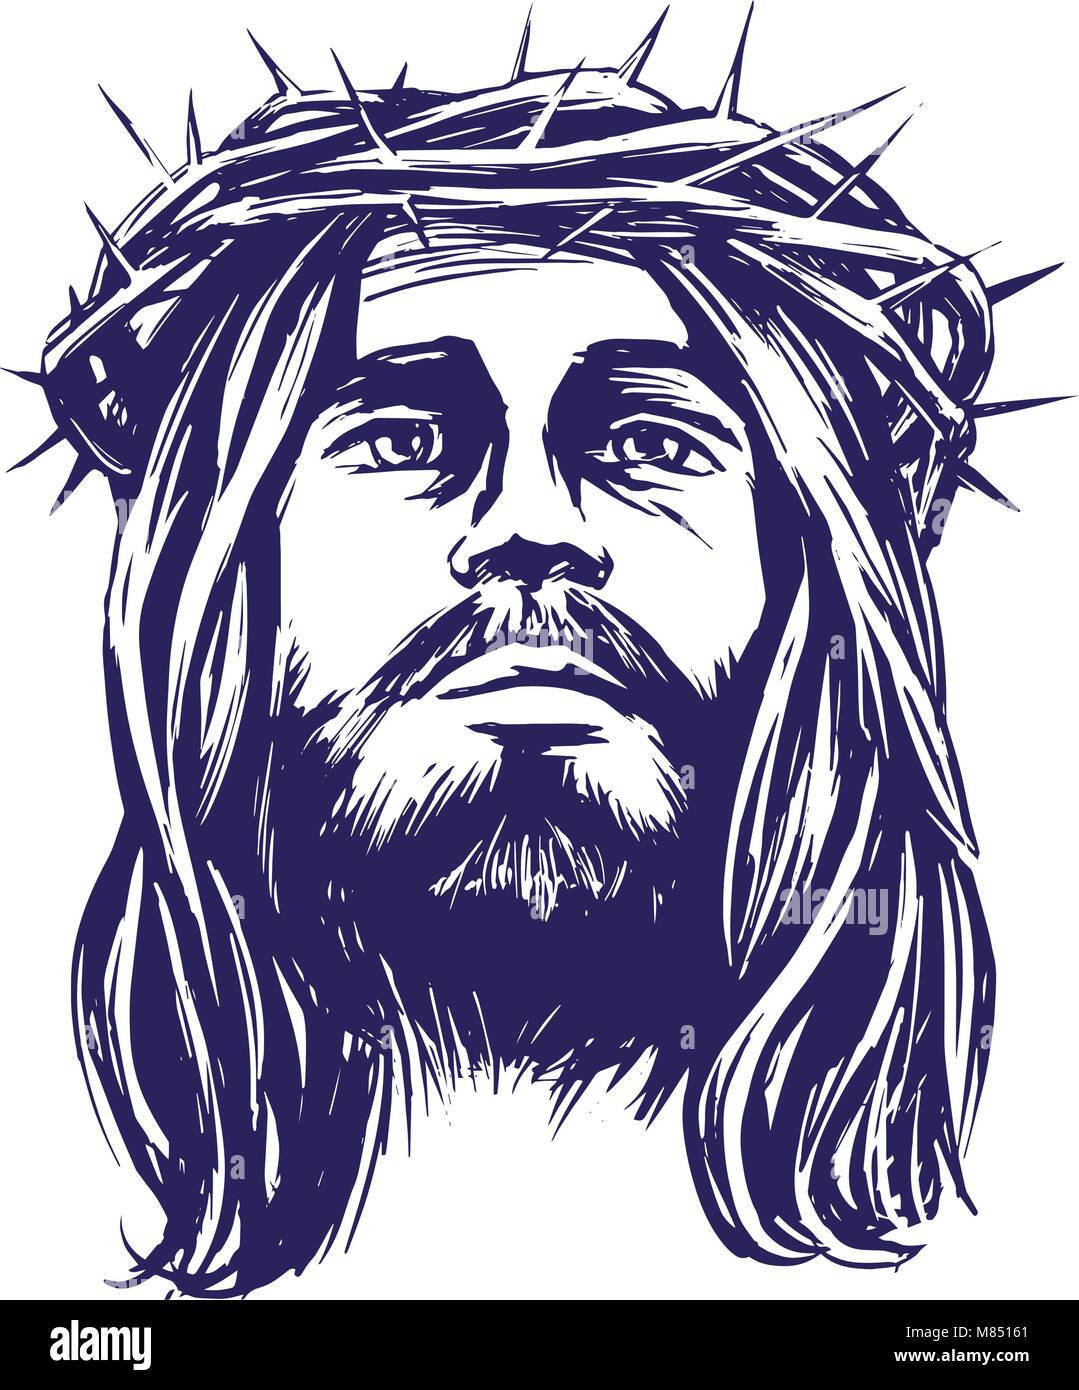 Jésus Christ, le Fils de Dieu dans une couronne d'épines sur sa tête, un symbole du christianisme hand drawn vector illustration croquis Illustration de Vecteur